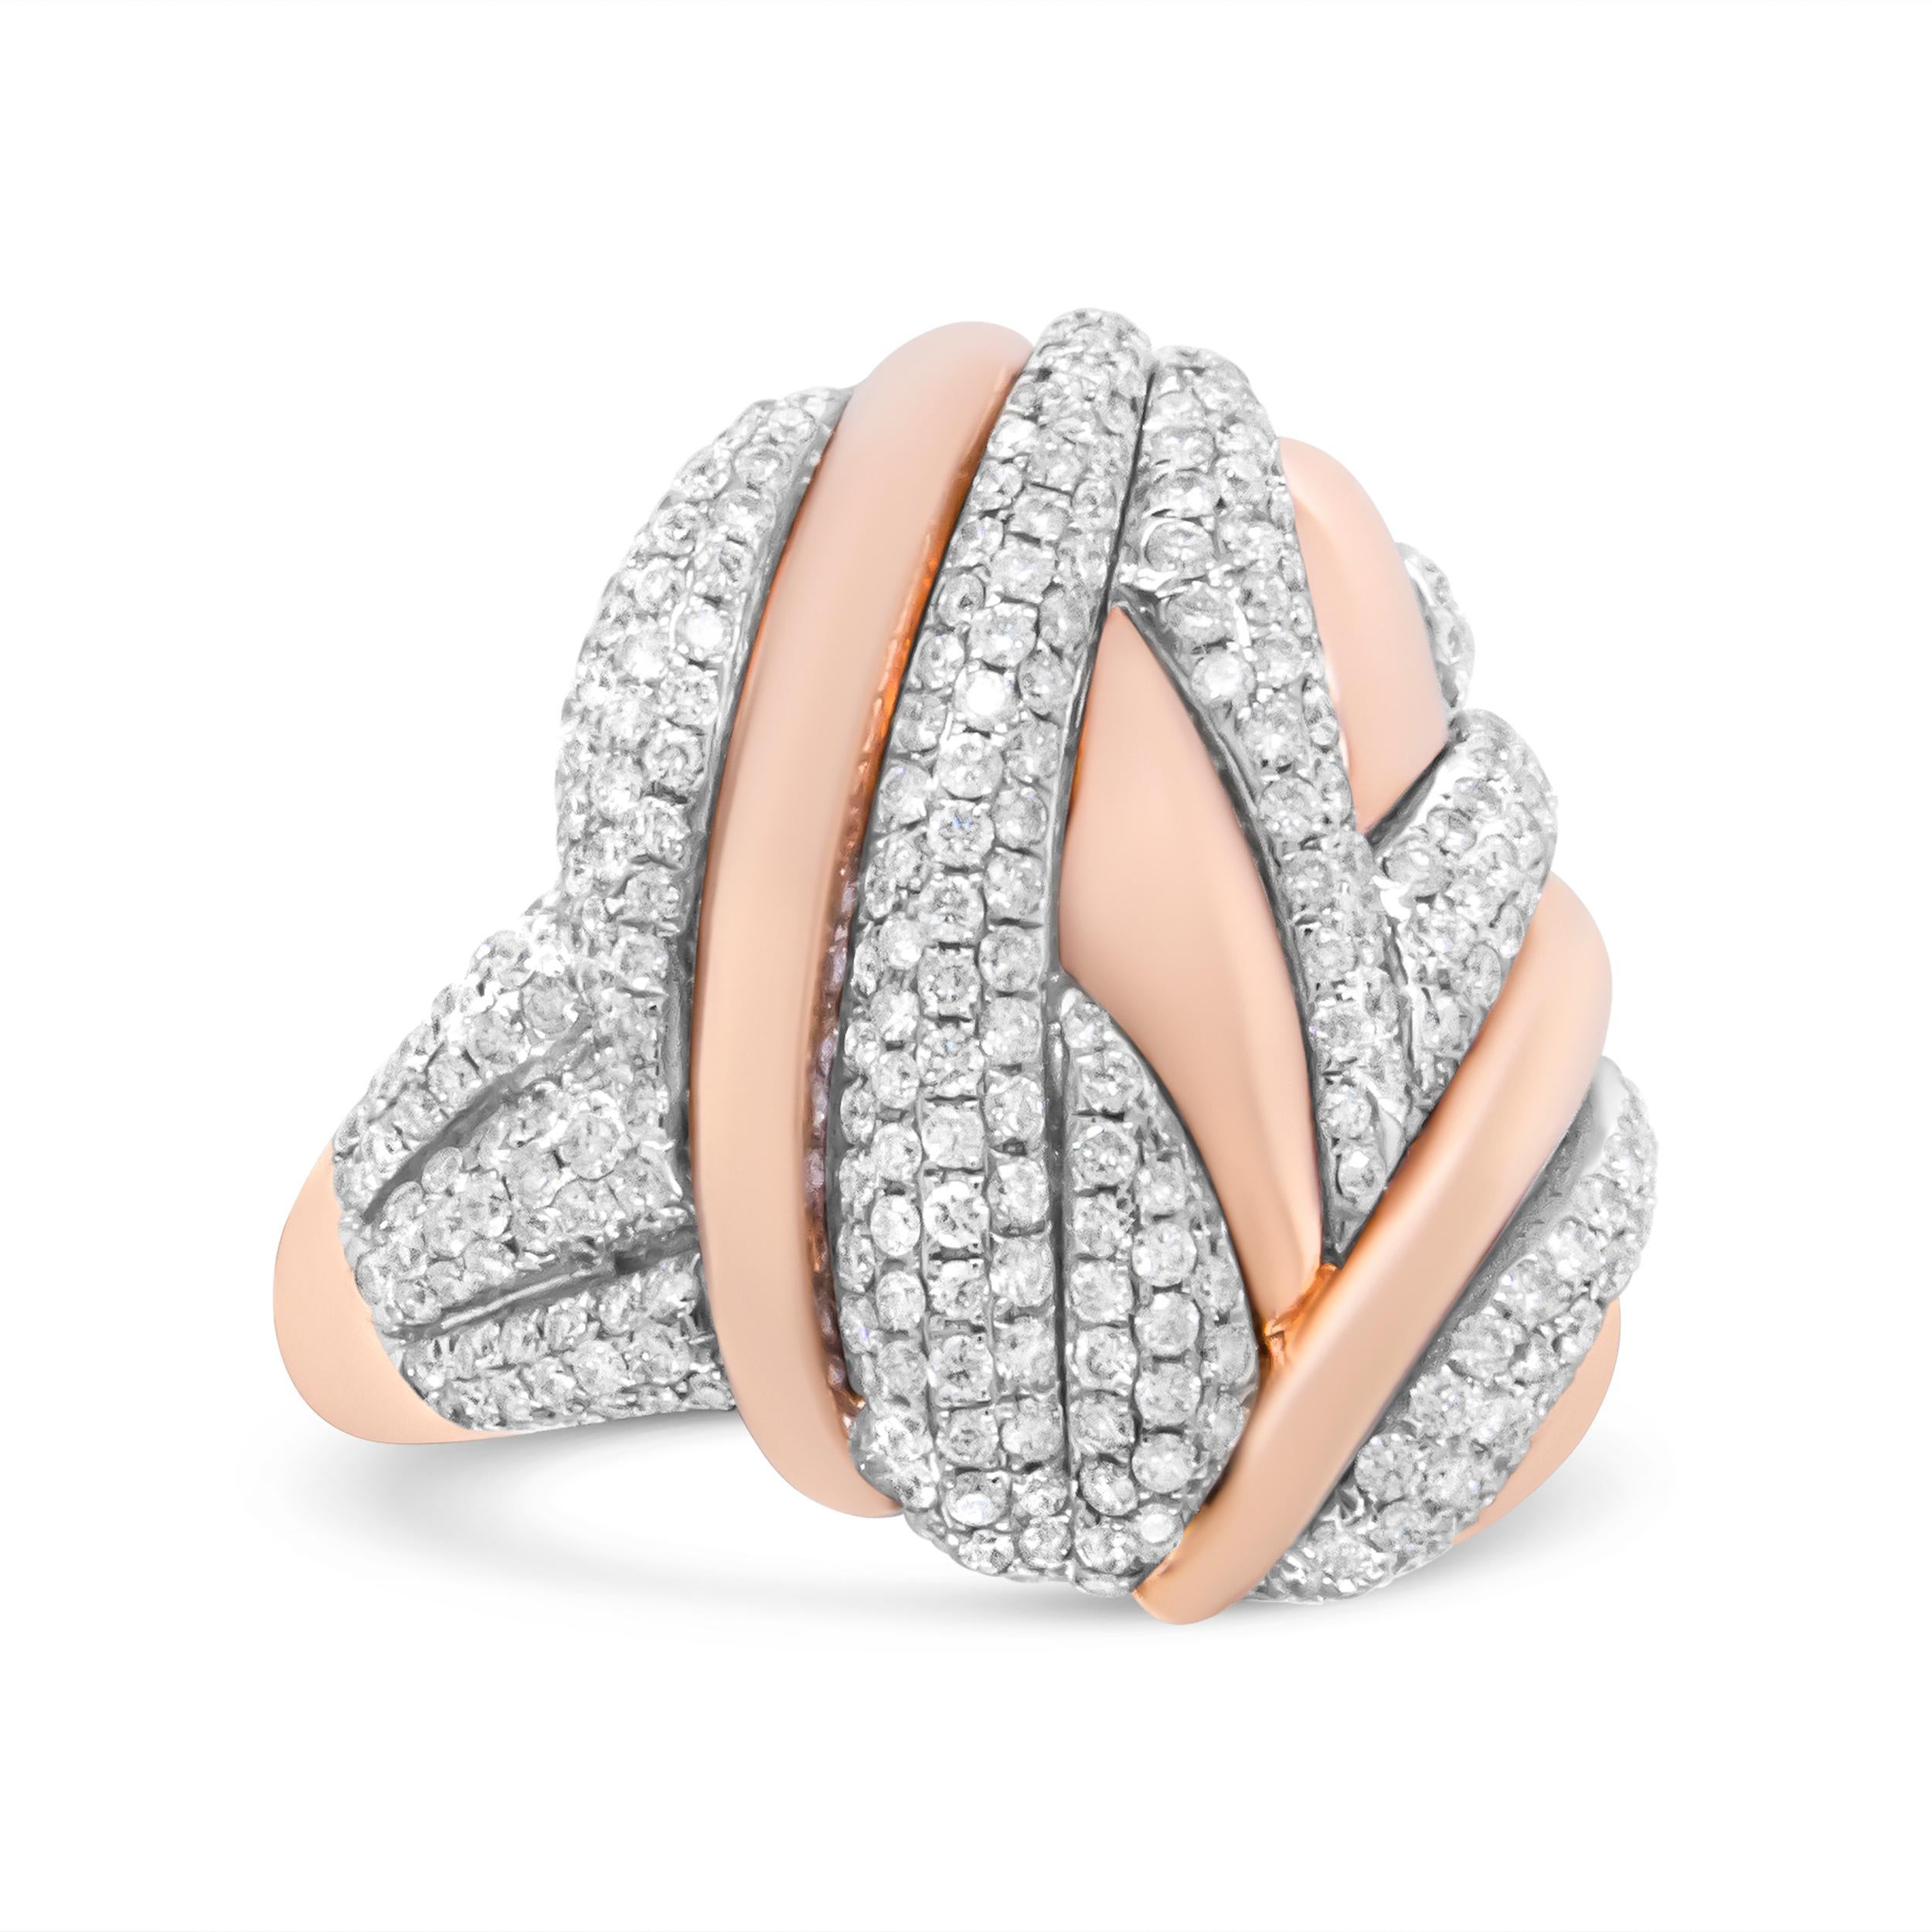 Dieser moderne und luxuriöse ovale Ring im Bypass-Design ist die Ergänzung Ihrer Schmucksammlung, auf die Sie schon lange gewartet haben. Der Ring ist aus tiefem 18-karätigem Roségold gefertigt und mit Schlieren aus natürlichen Weißgolddiamanten